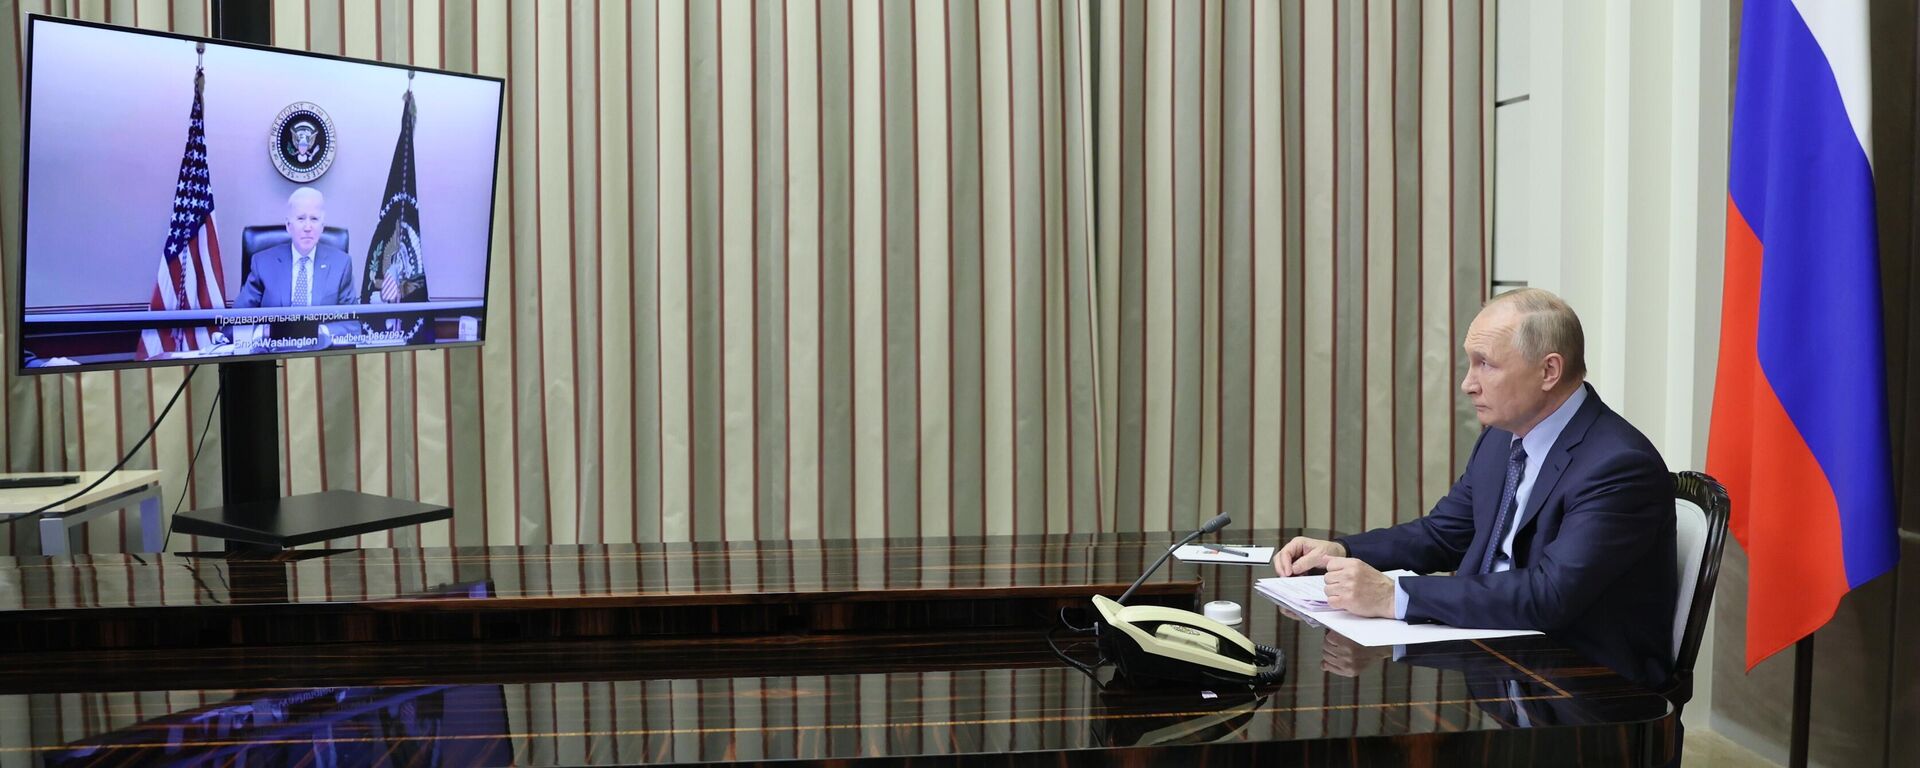 Президент РФ Владимир Путин во время переговоров с президентом США Джозефом Байденом в режиме видеоконференции - Sputnik Латвия, 1920, 09.12.2021